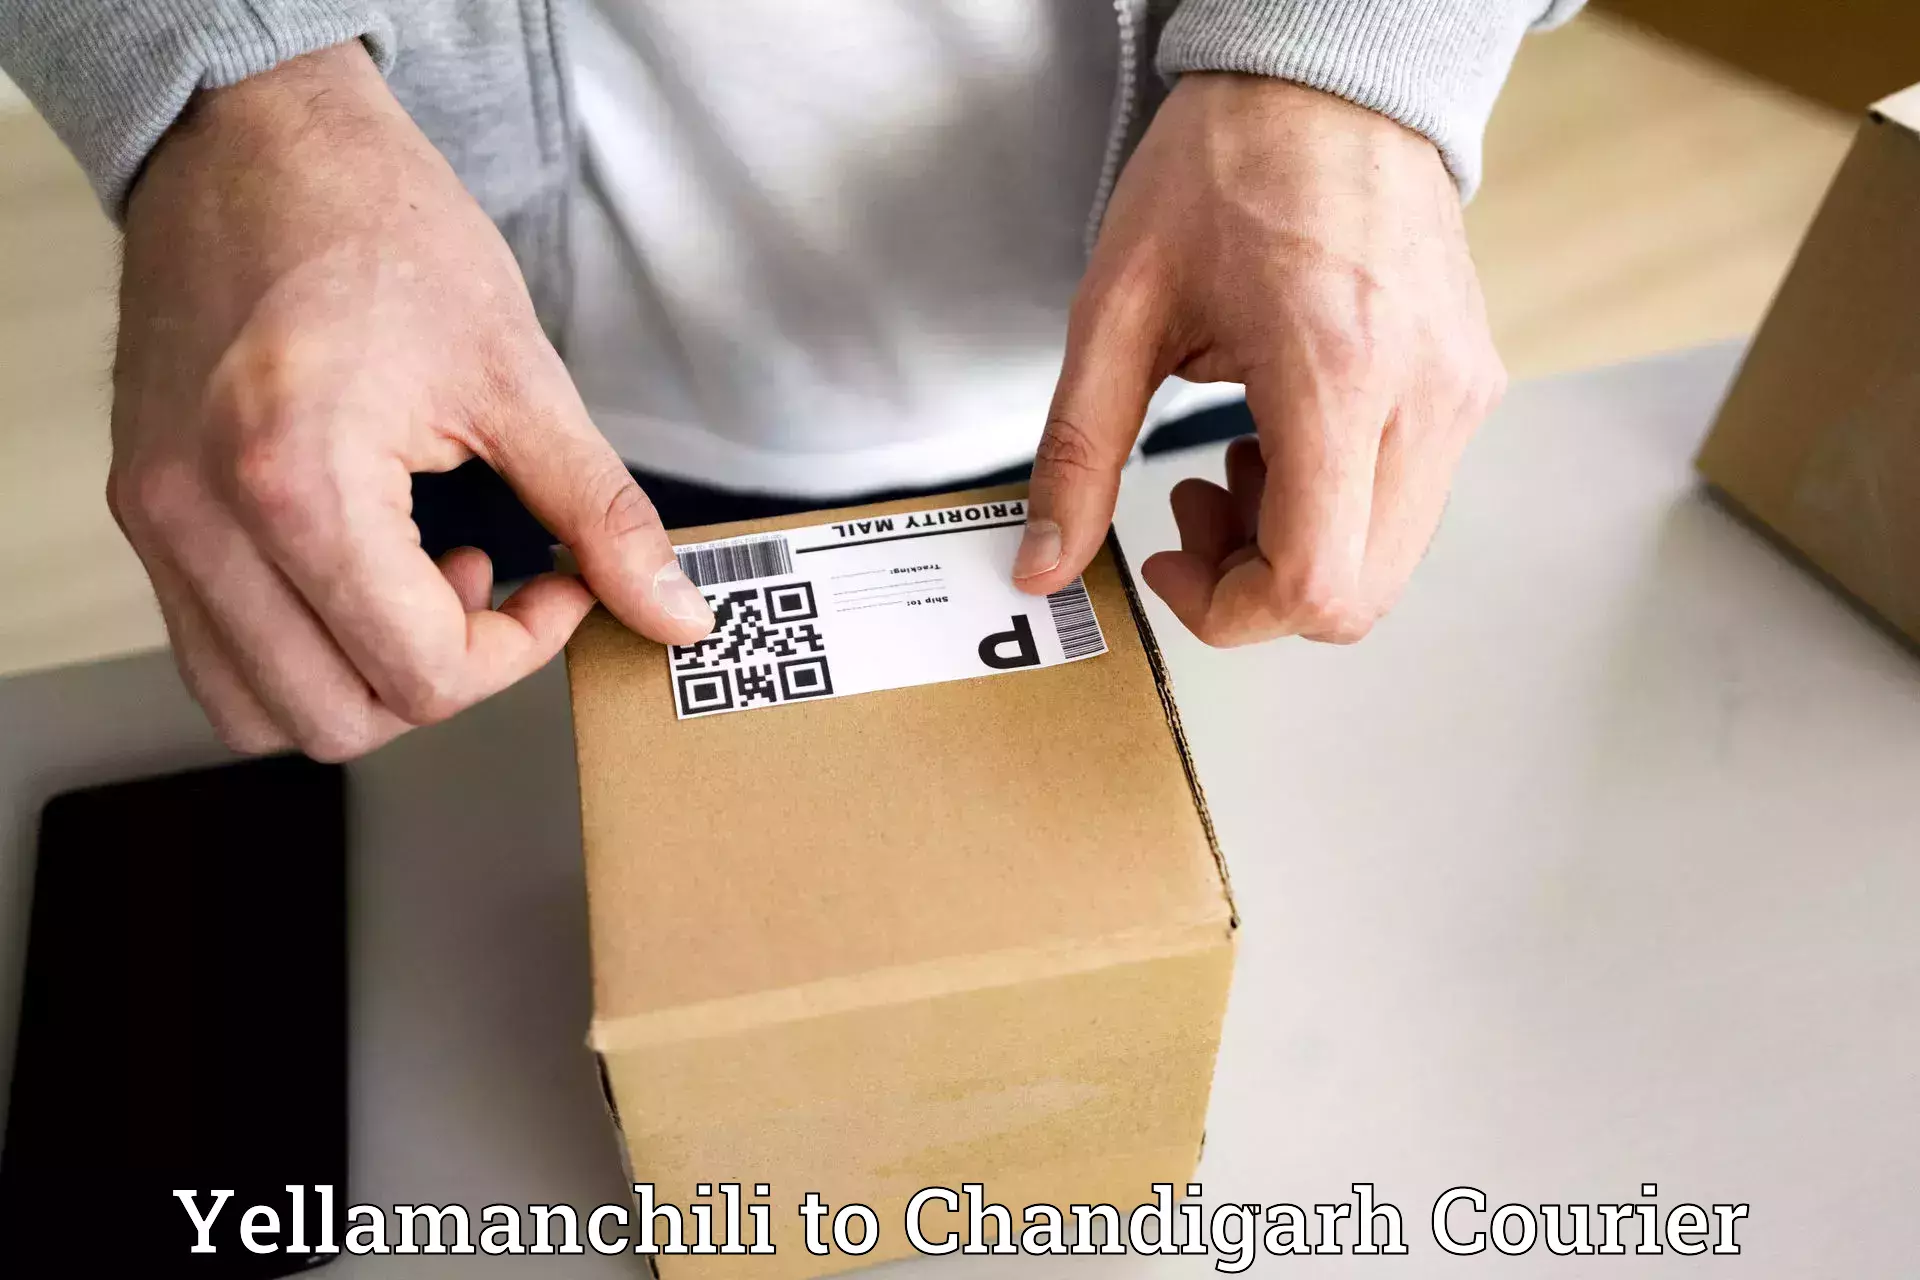 Reliable shipping partners Yellamanchili to Chandigarh